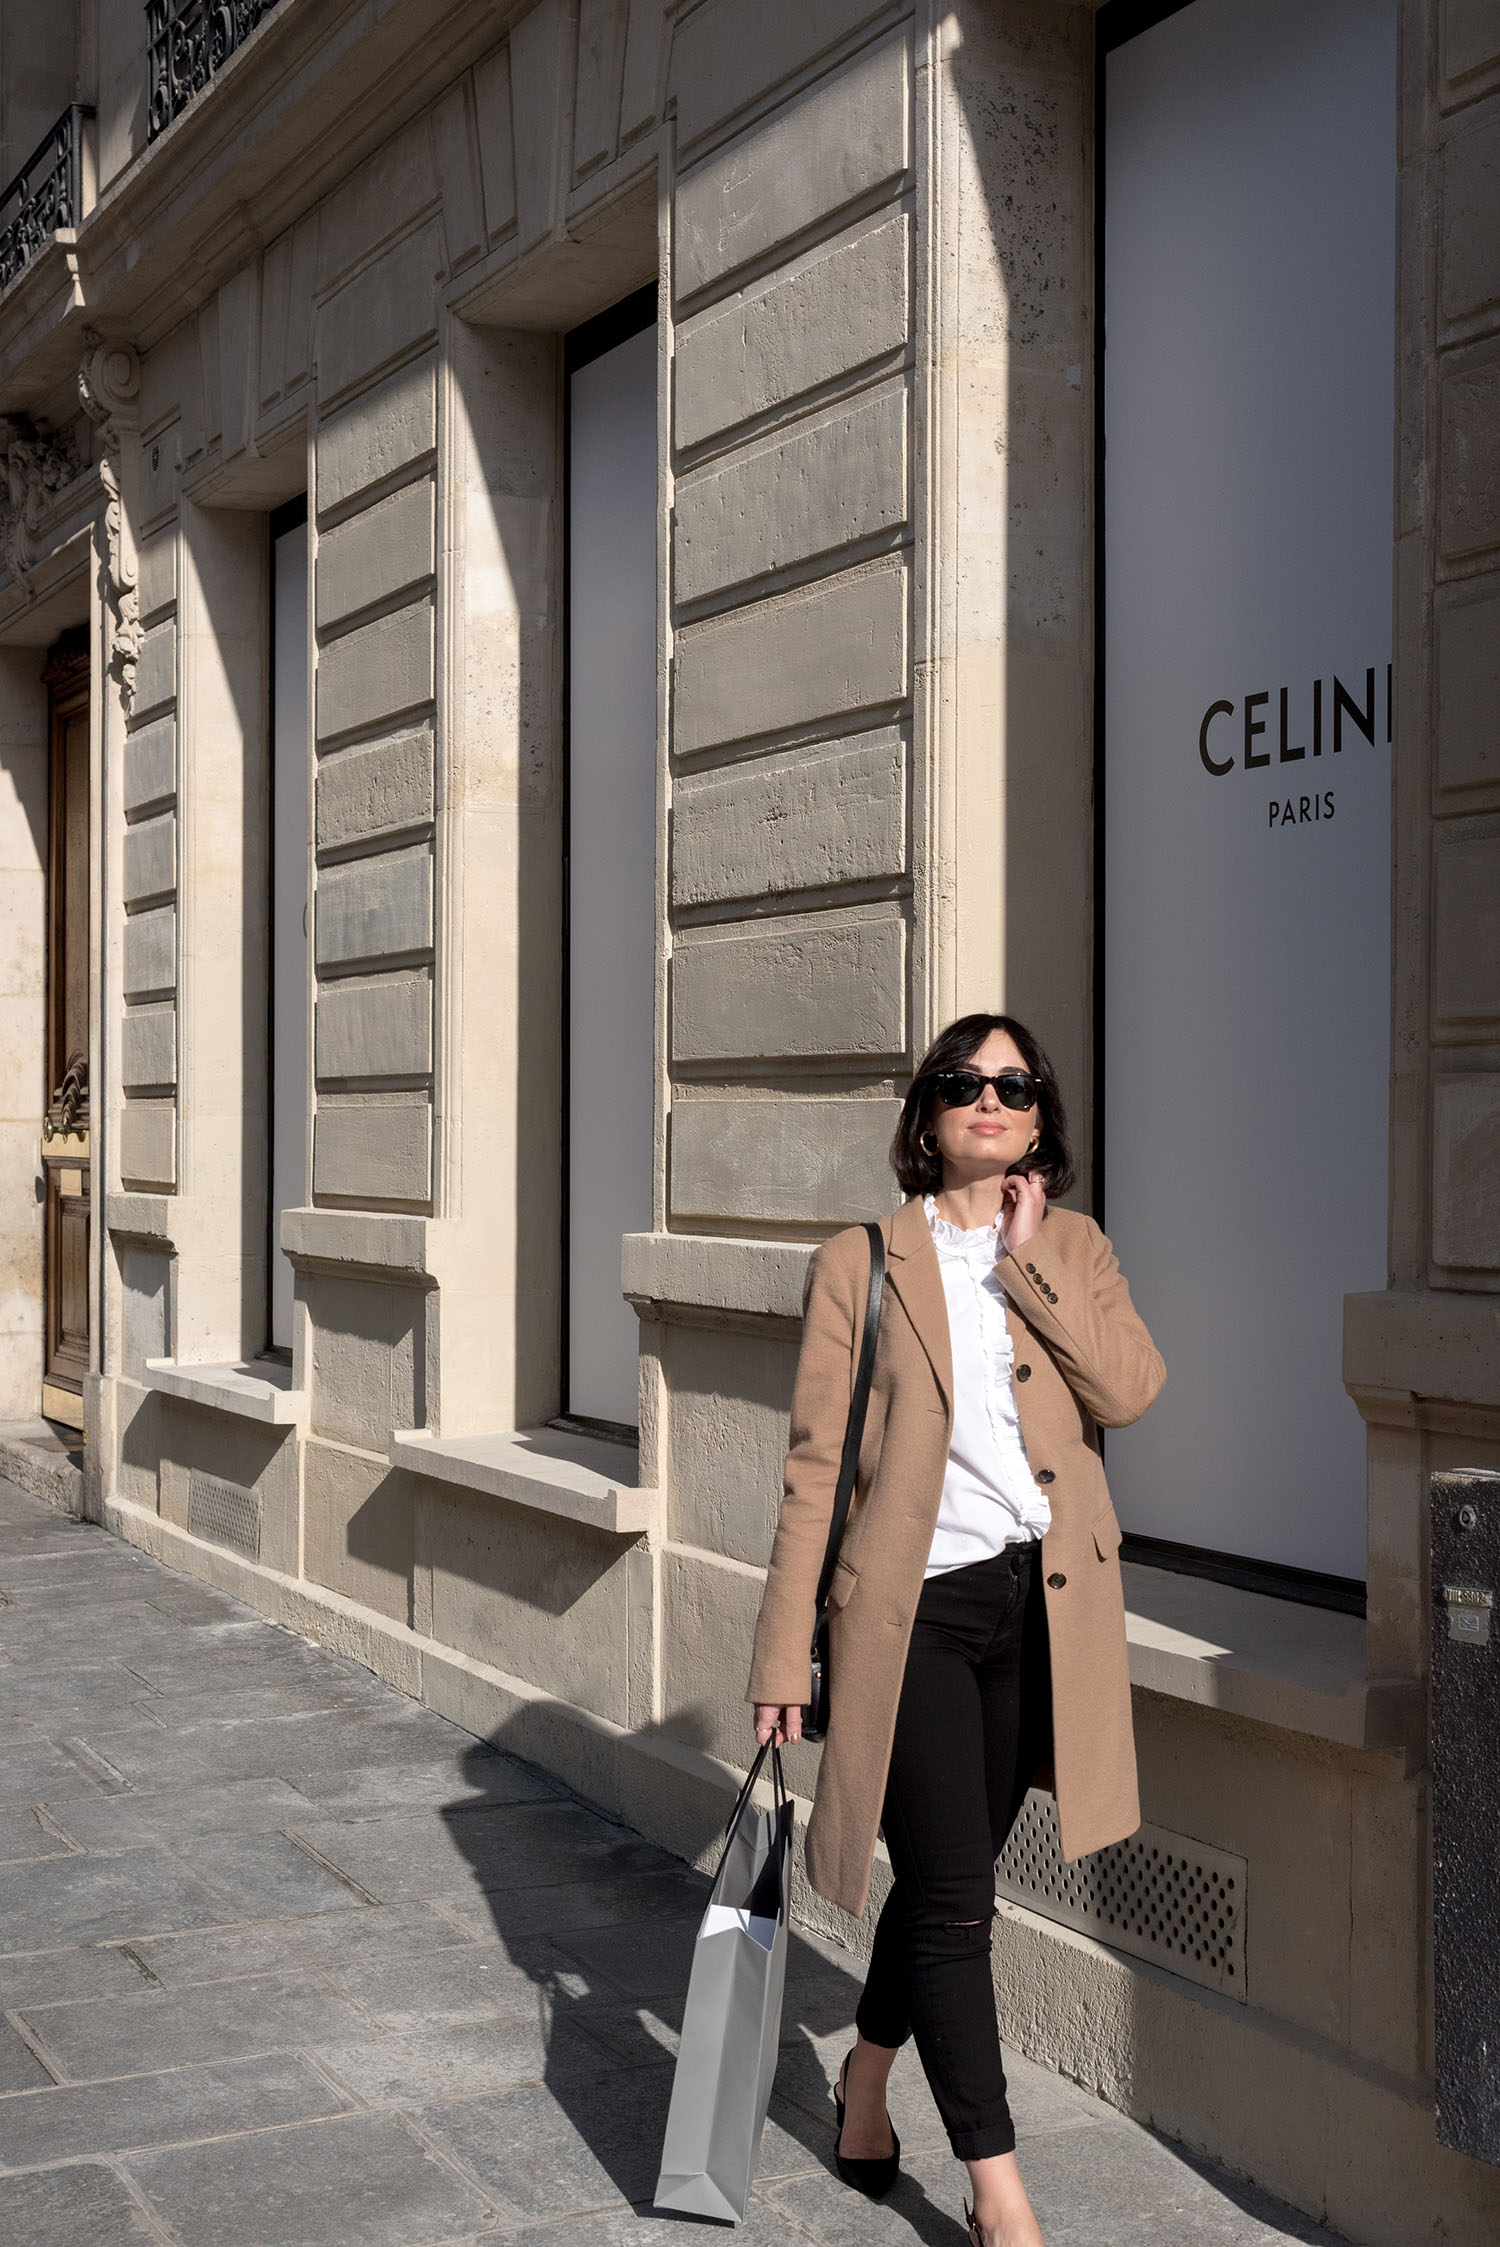 CELINE PARIS MONTAIGNE a CELINE store in Paris.